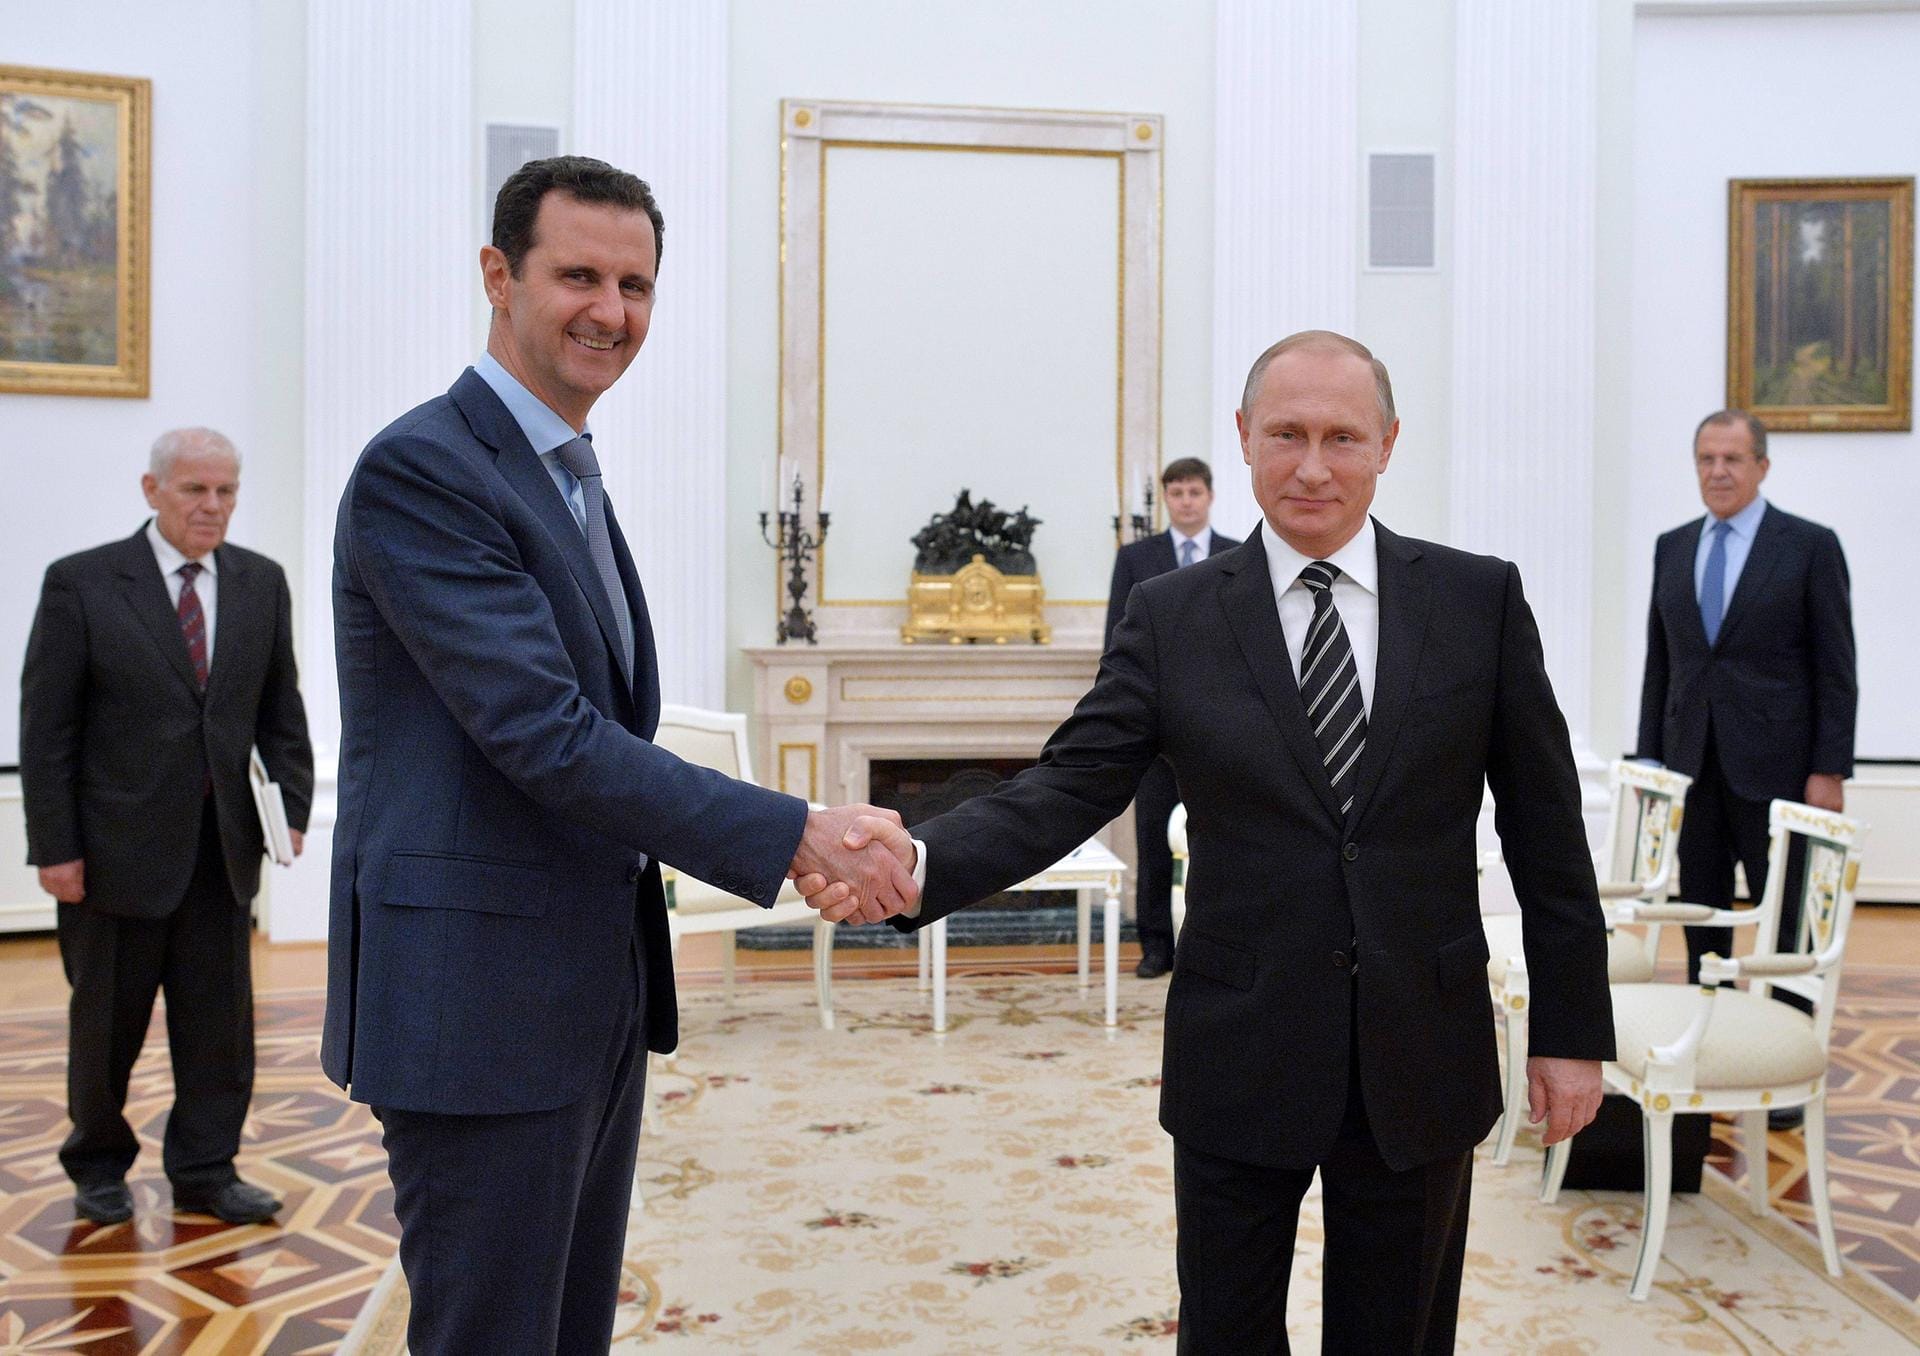 Militärisch engagiert sich Putin ab 2015 in Syrien: Gemeinsam mit dem Iran stützt die russische Armee den Machthaber Baschar al-Assad. Mit der Hilfe Russlands wird etwa die Stadt Aleppo nahezu vollständig zerstört.